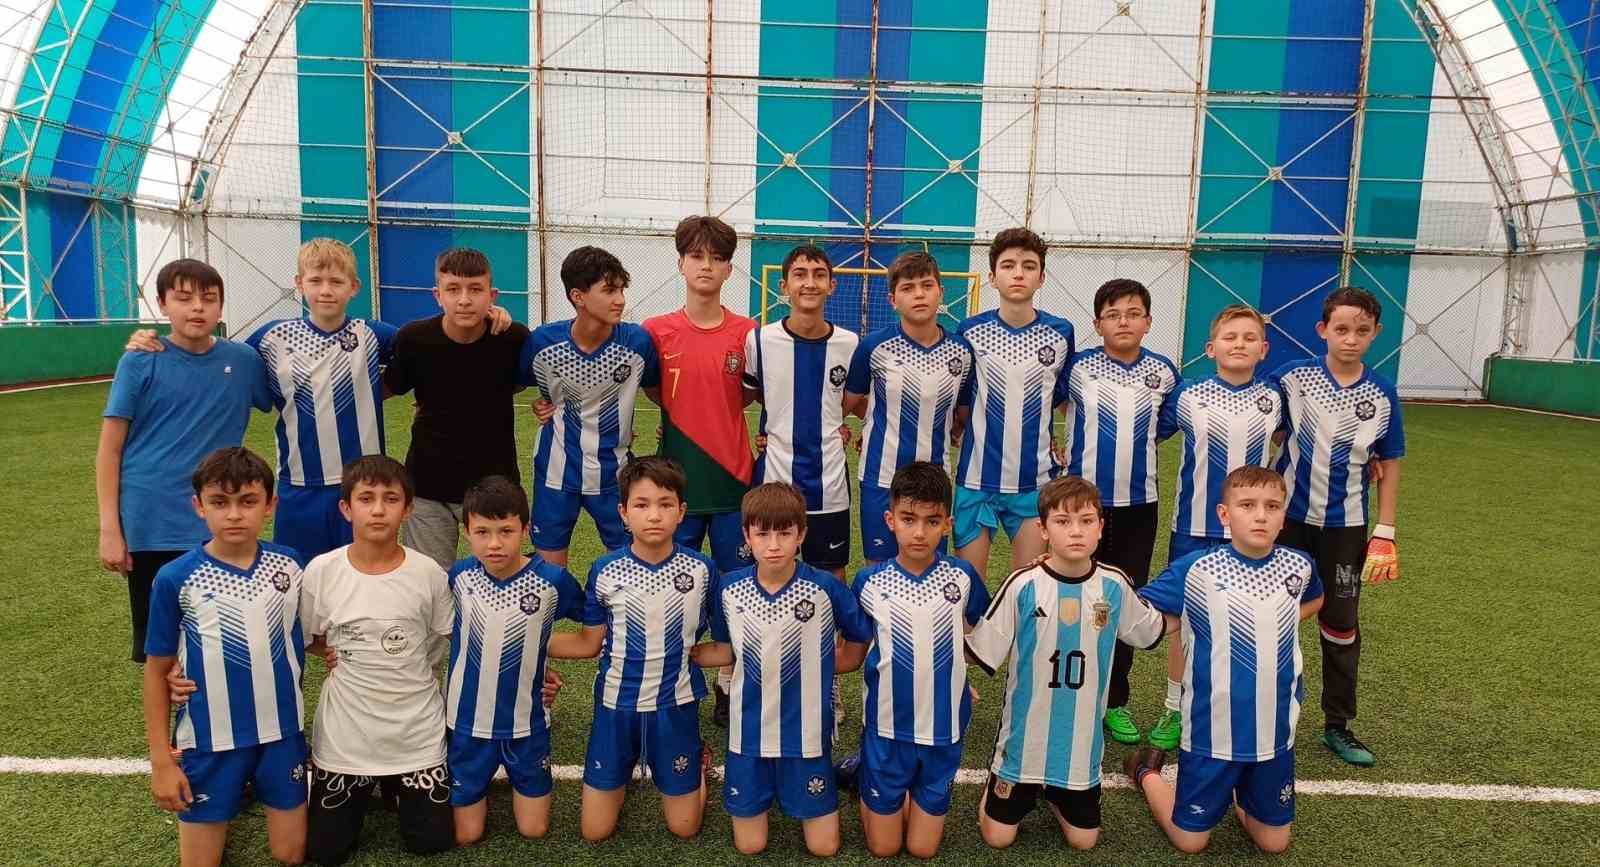 Simav’da Yaz Kur’an Kursları futbol turnuvası